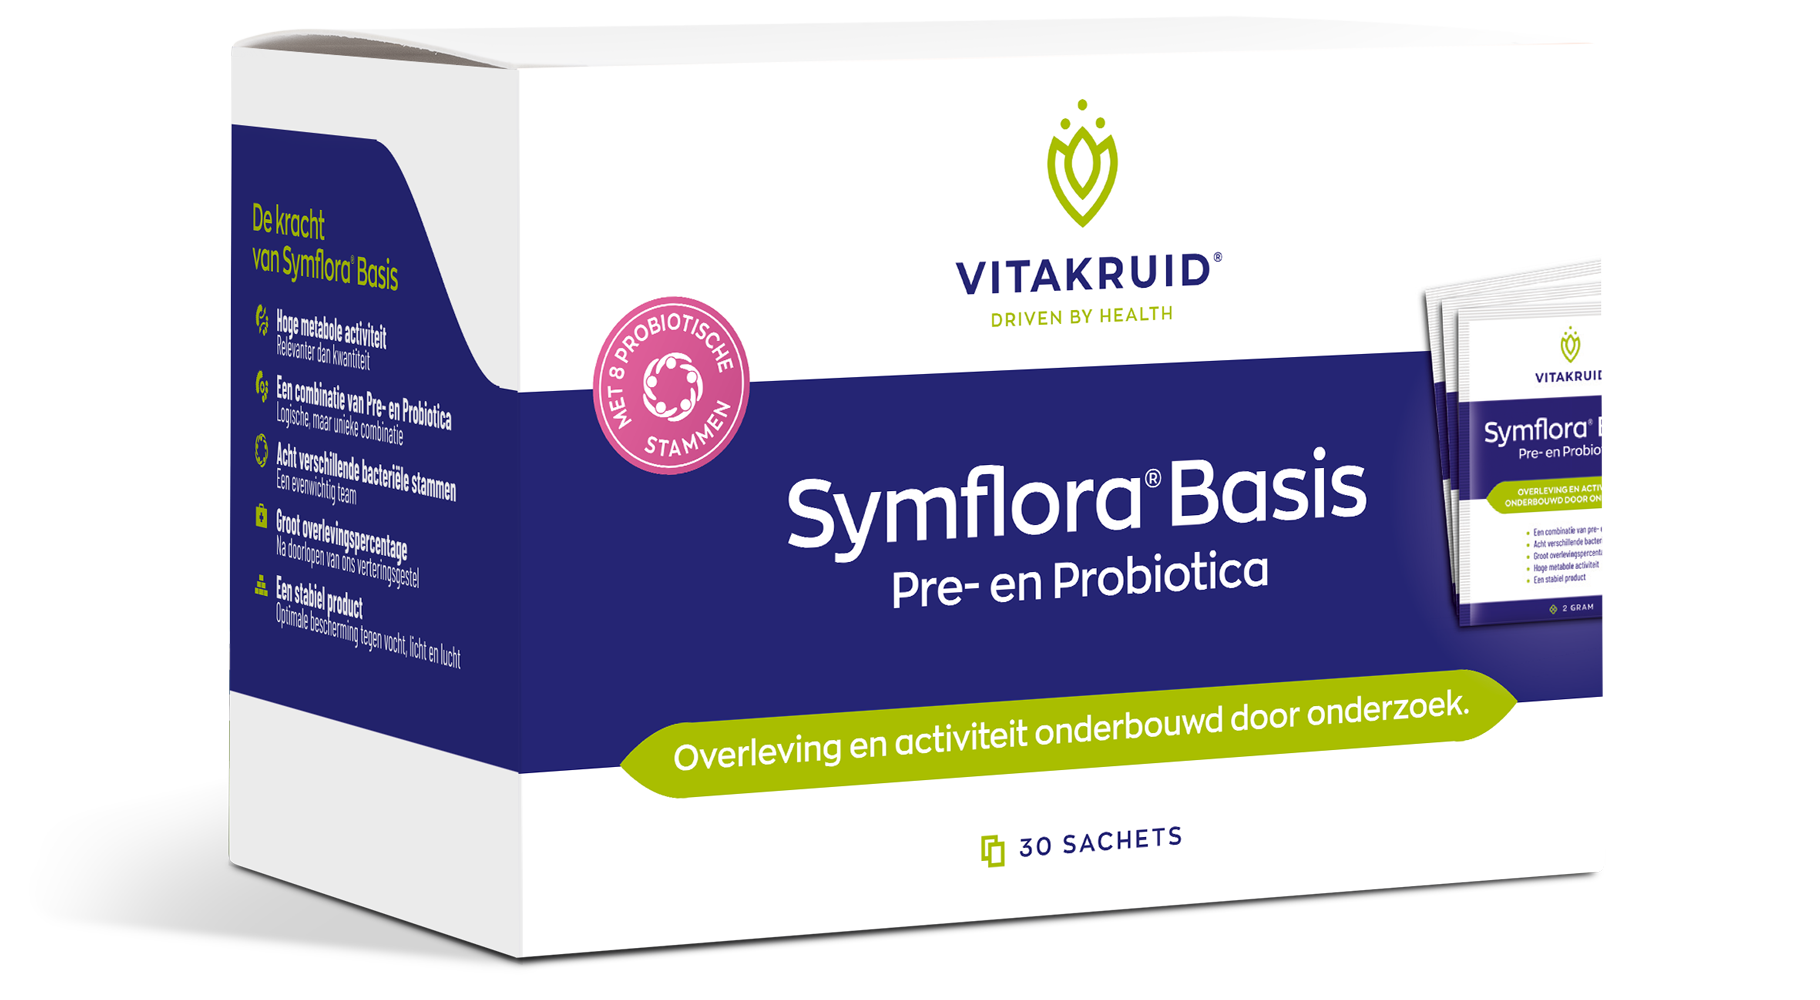 Symflora Basis Pre- en Probiotica